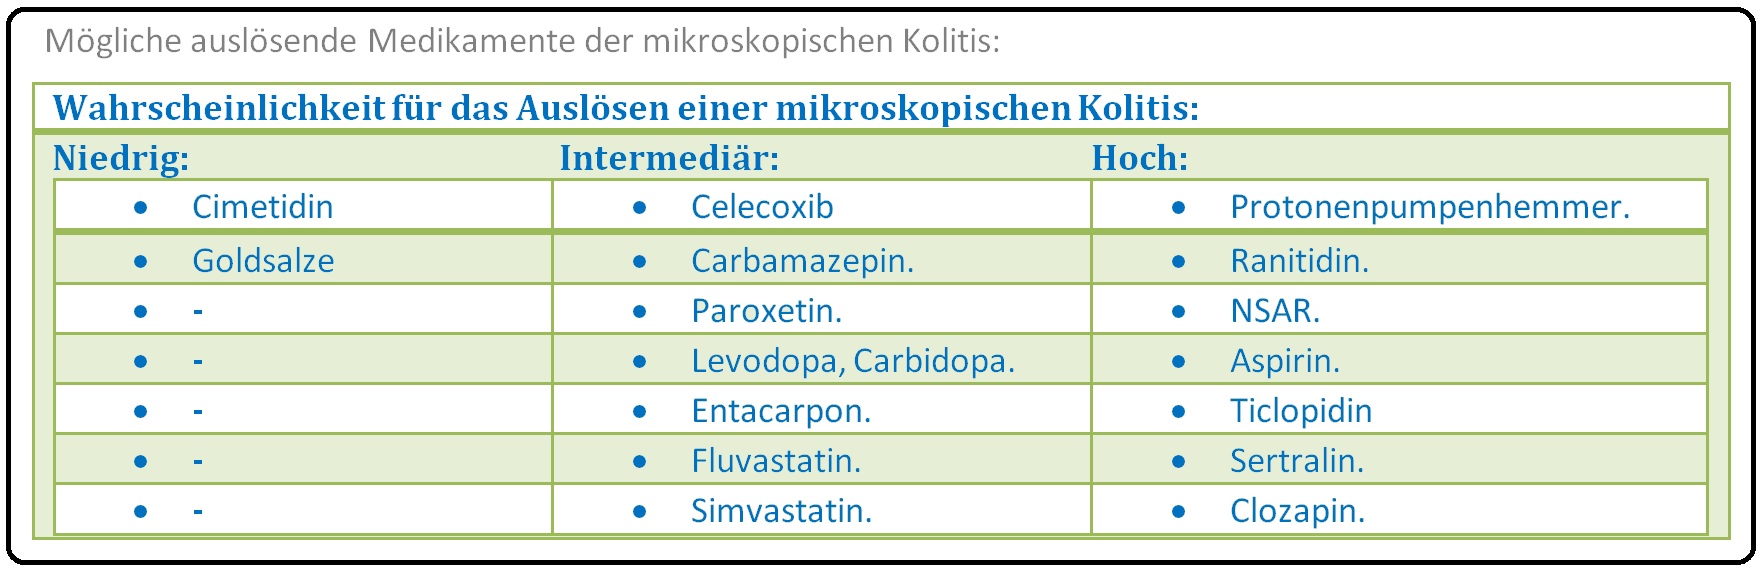 584 Mögliche auslösende Medikamente der mikroskopischen Kolitis